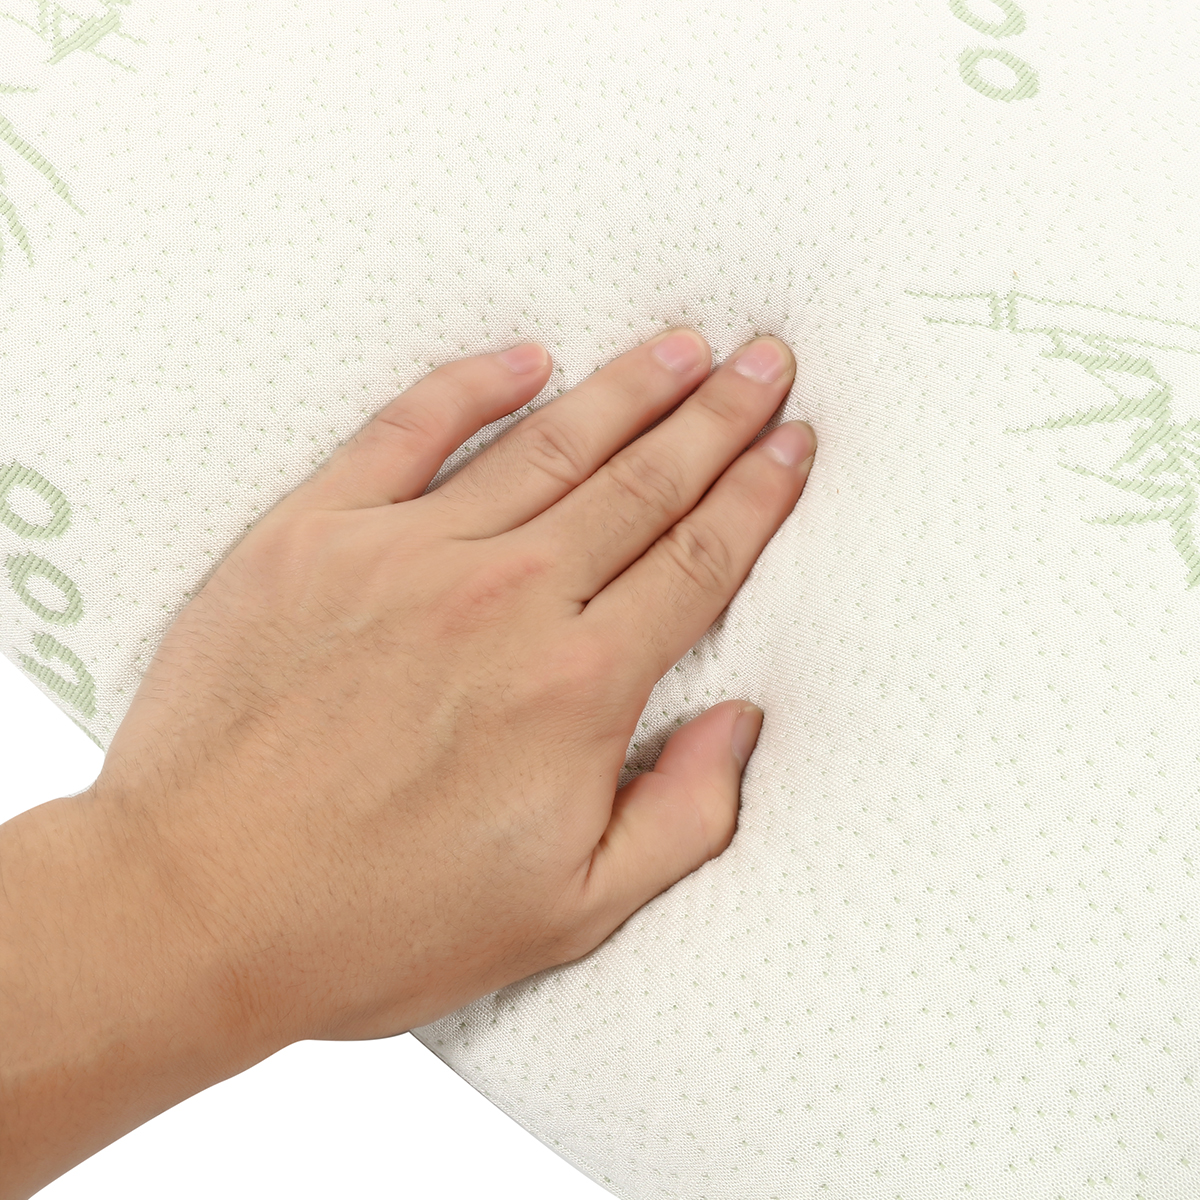 Bamboo-Fabric-Pillow-Memory-Foam-Filler-Pressure-Relief-AntibacterialampAnti-Mite-1391830